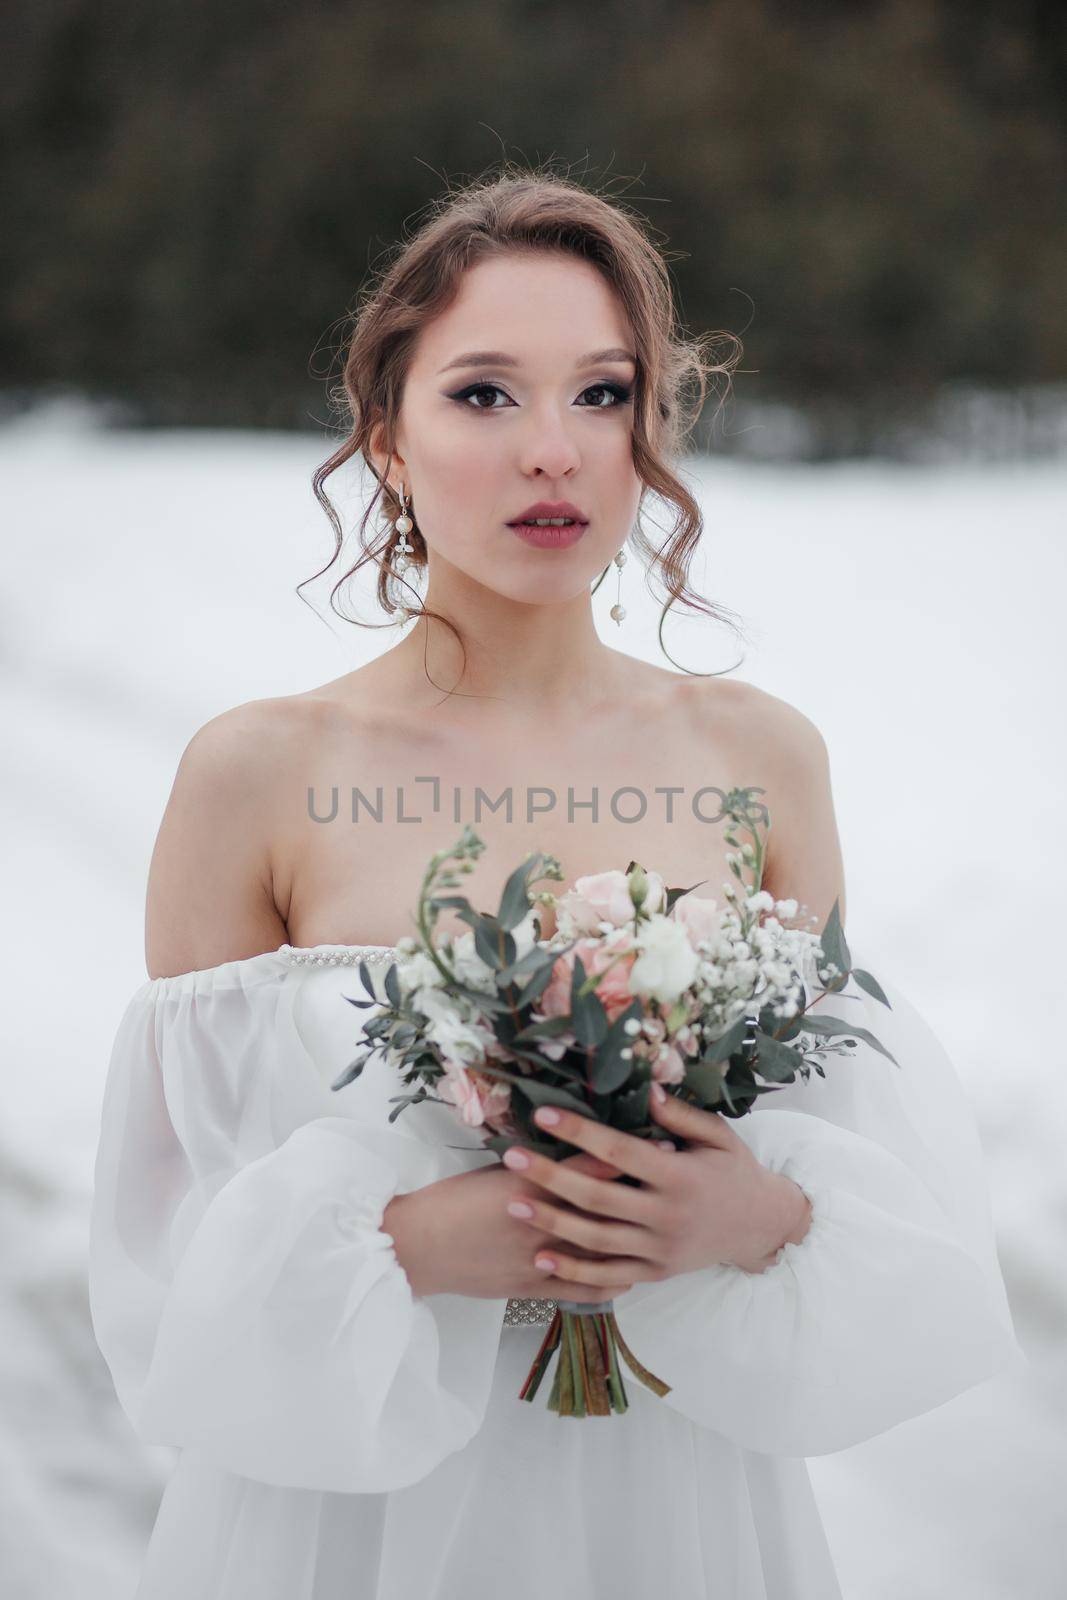 Portrait of the bride holding a bouquet.